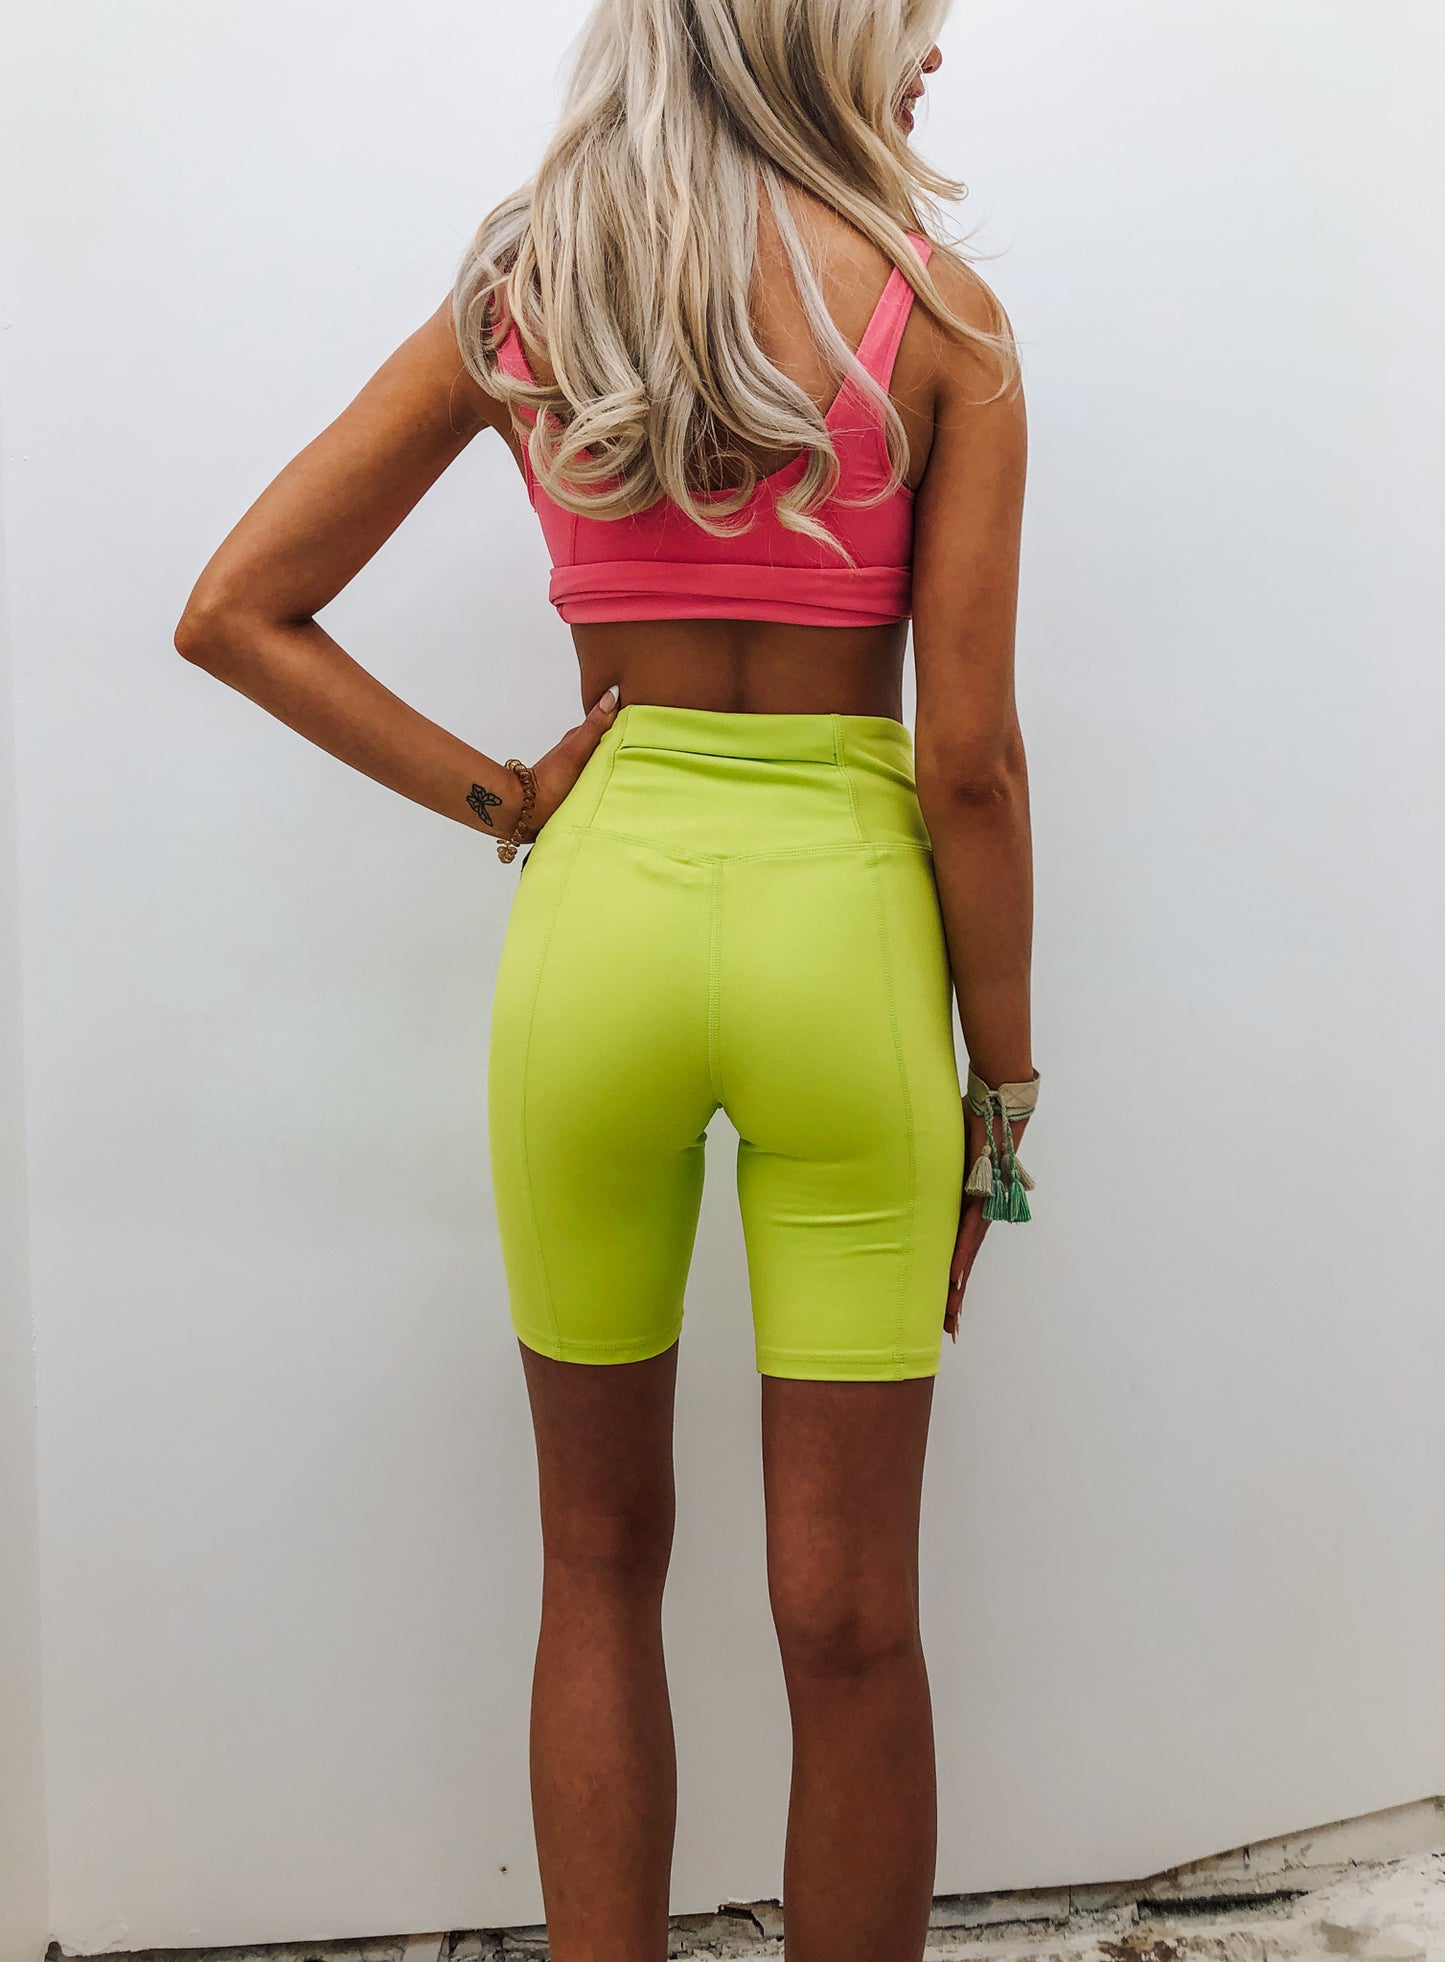 Get The Green Light Biker Shorts